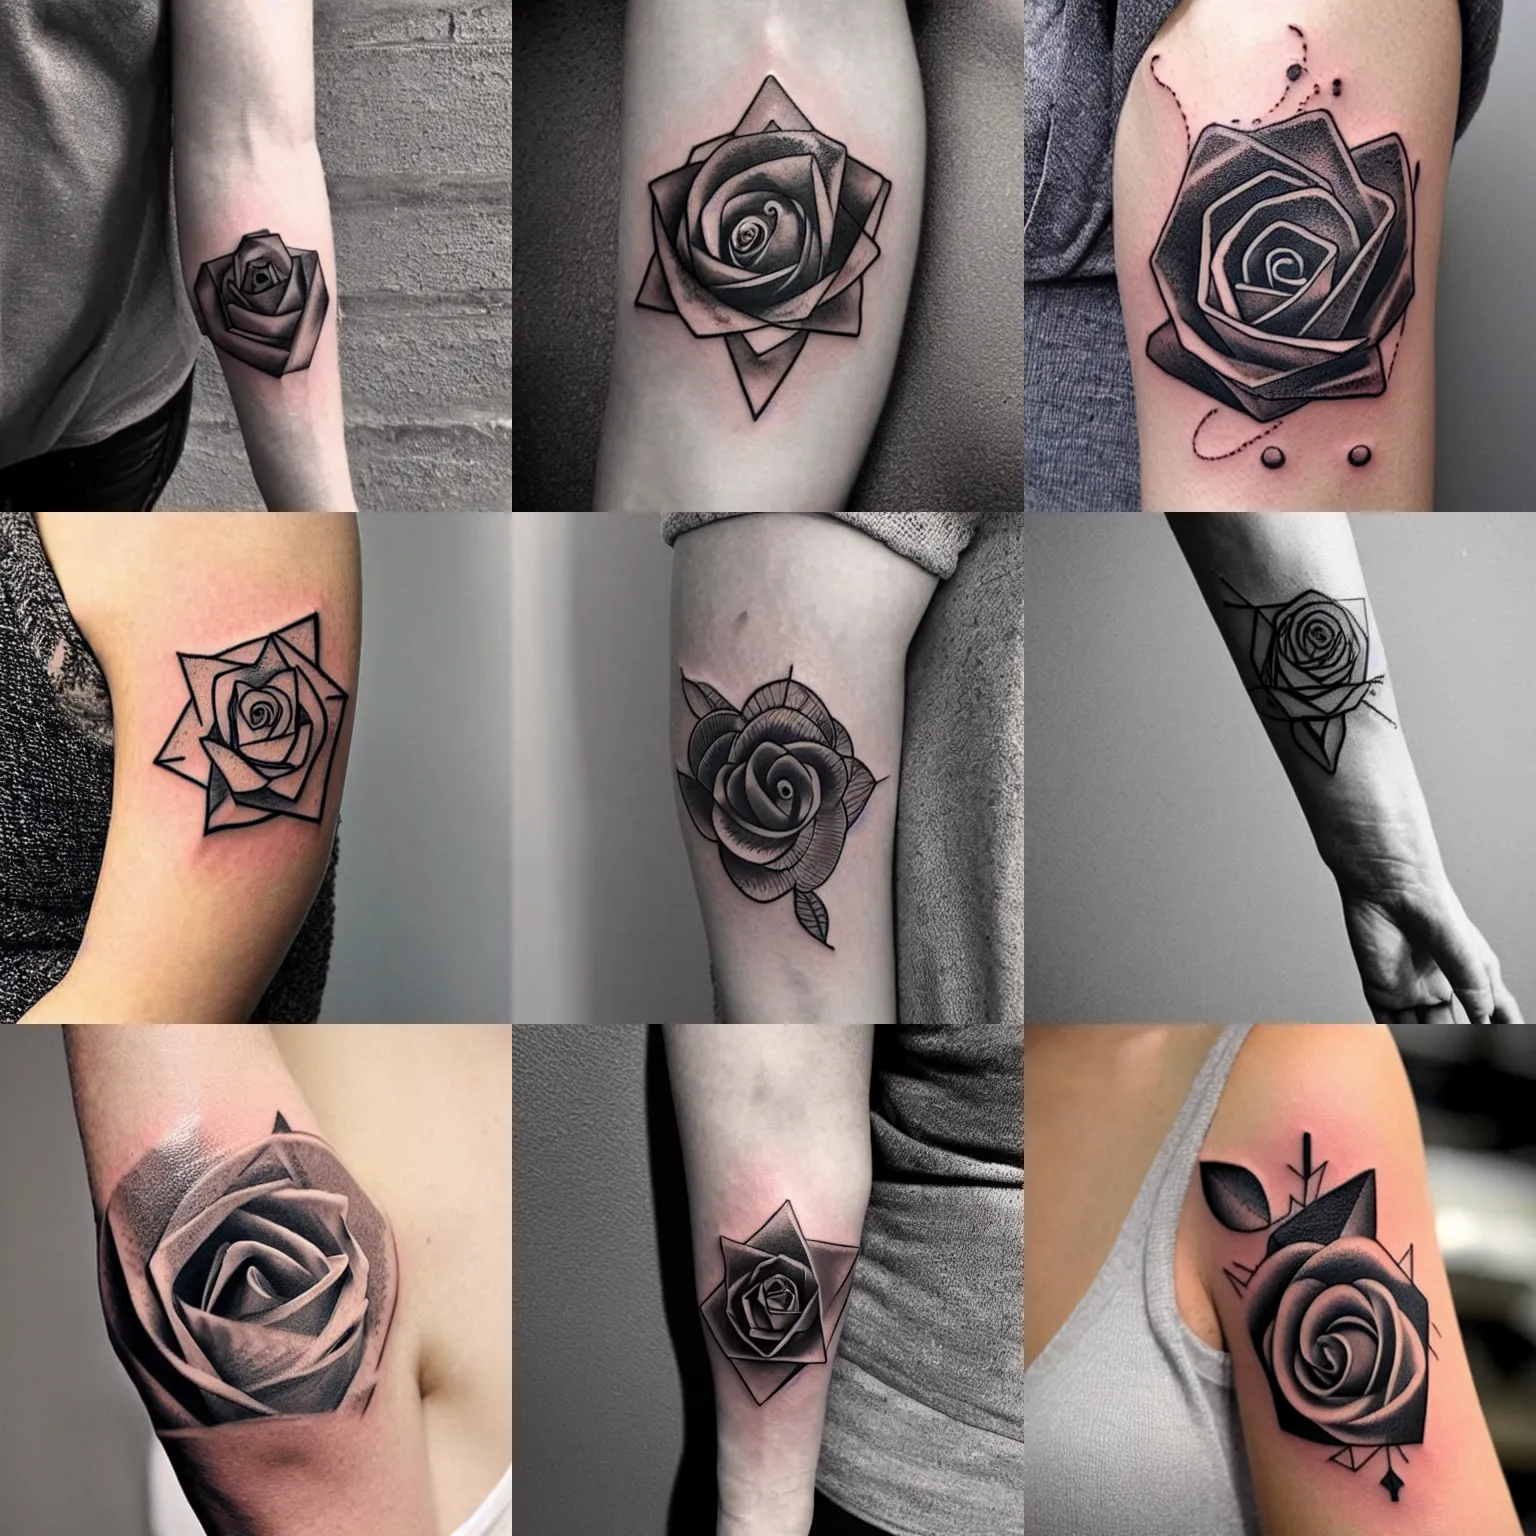 Prompt: geometric rose black tattoo, arm, minimalist